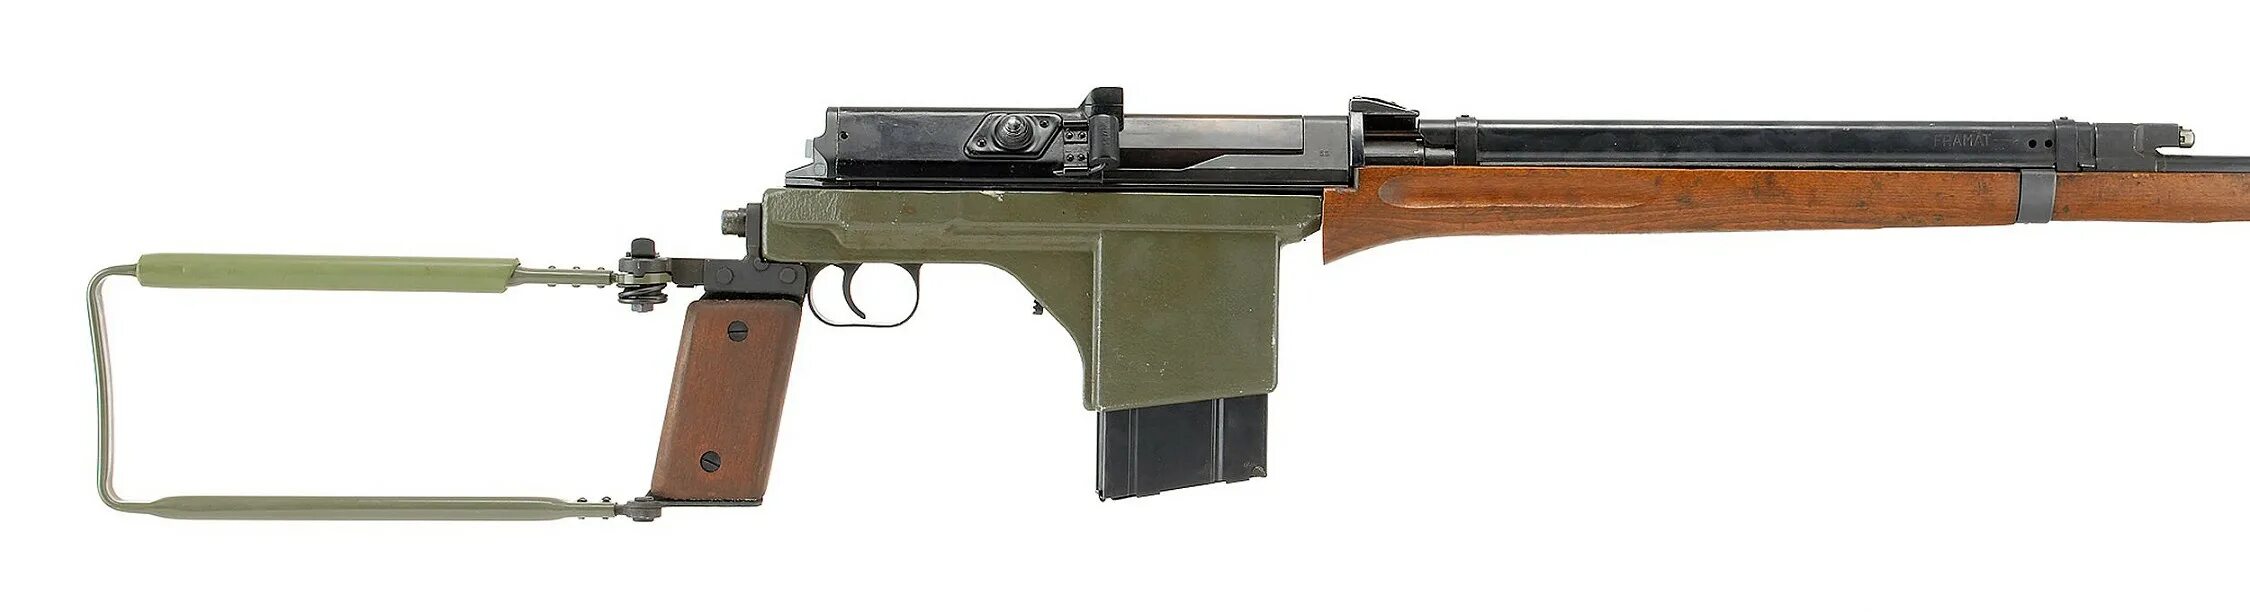 M 42 m 7 m. ПТР «Carl Gustav» m/42. Carl Gustav PVG M/42. M42 винтовка. Шведская винтовка АГ-42.